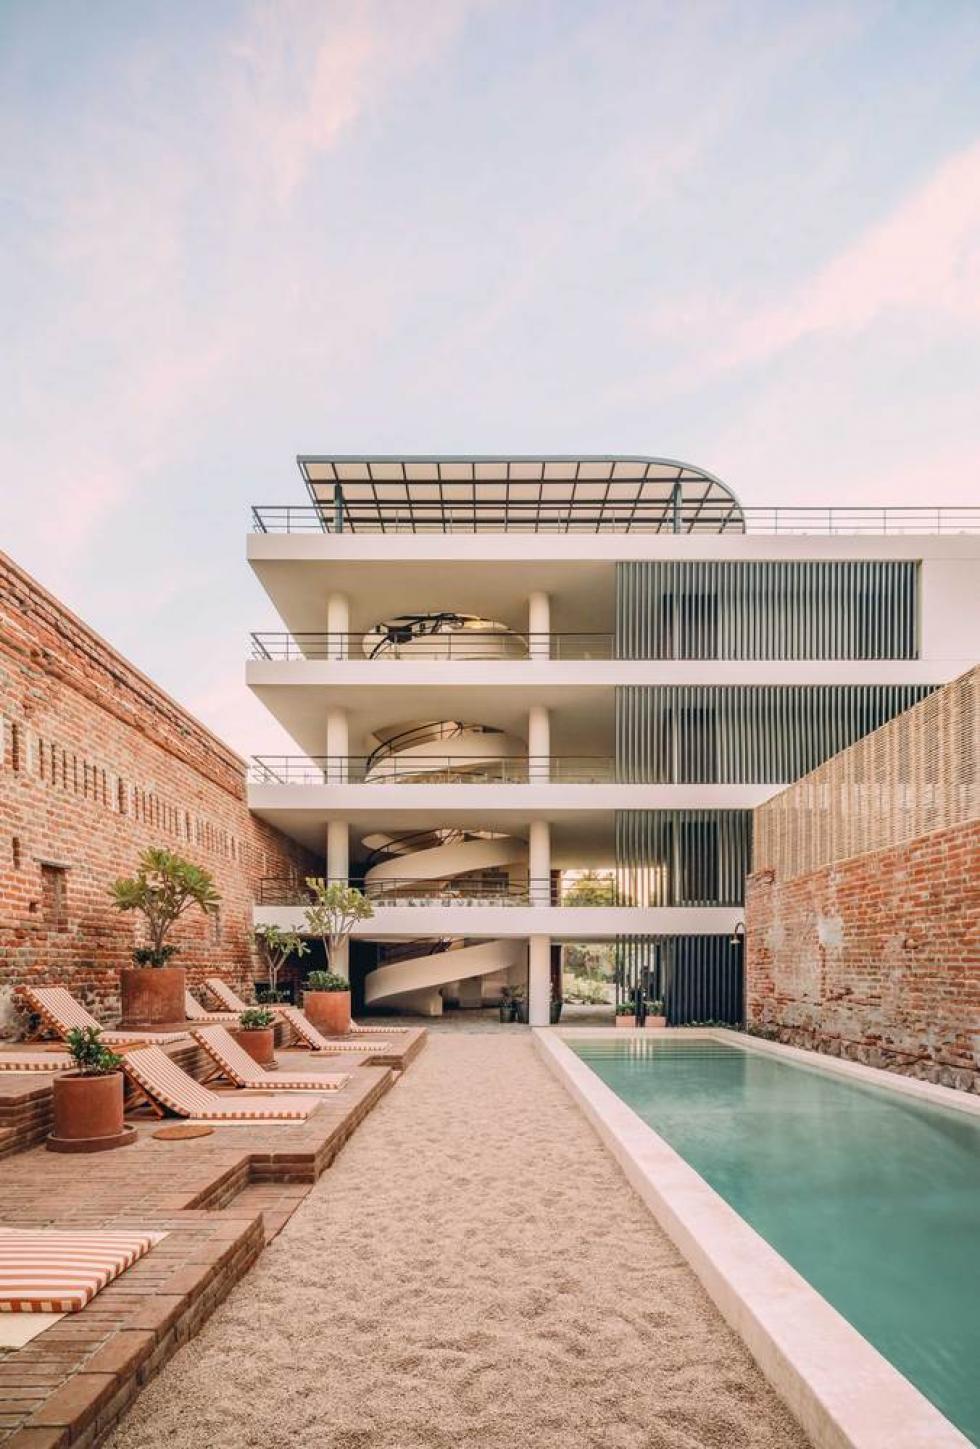 Különféle belsőépítészeti és lakberendezési stílusok ötvöződnek a felújított Mexikói hotelben